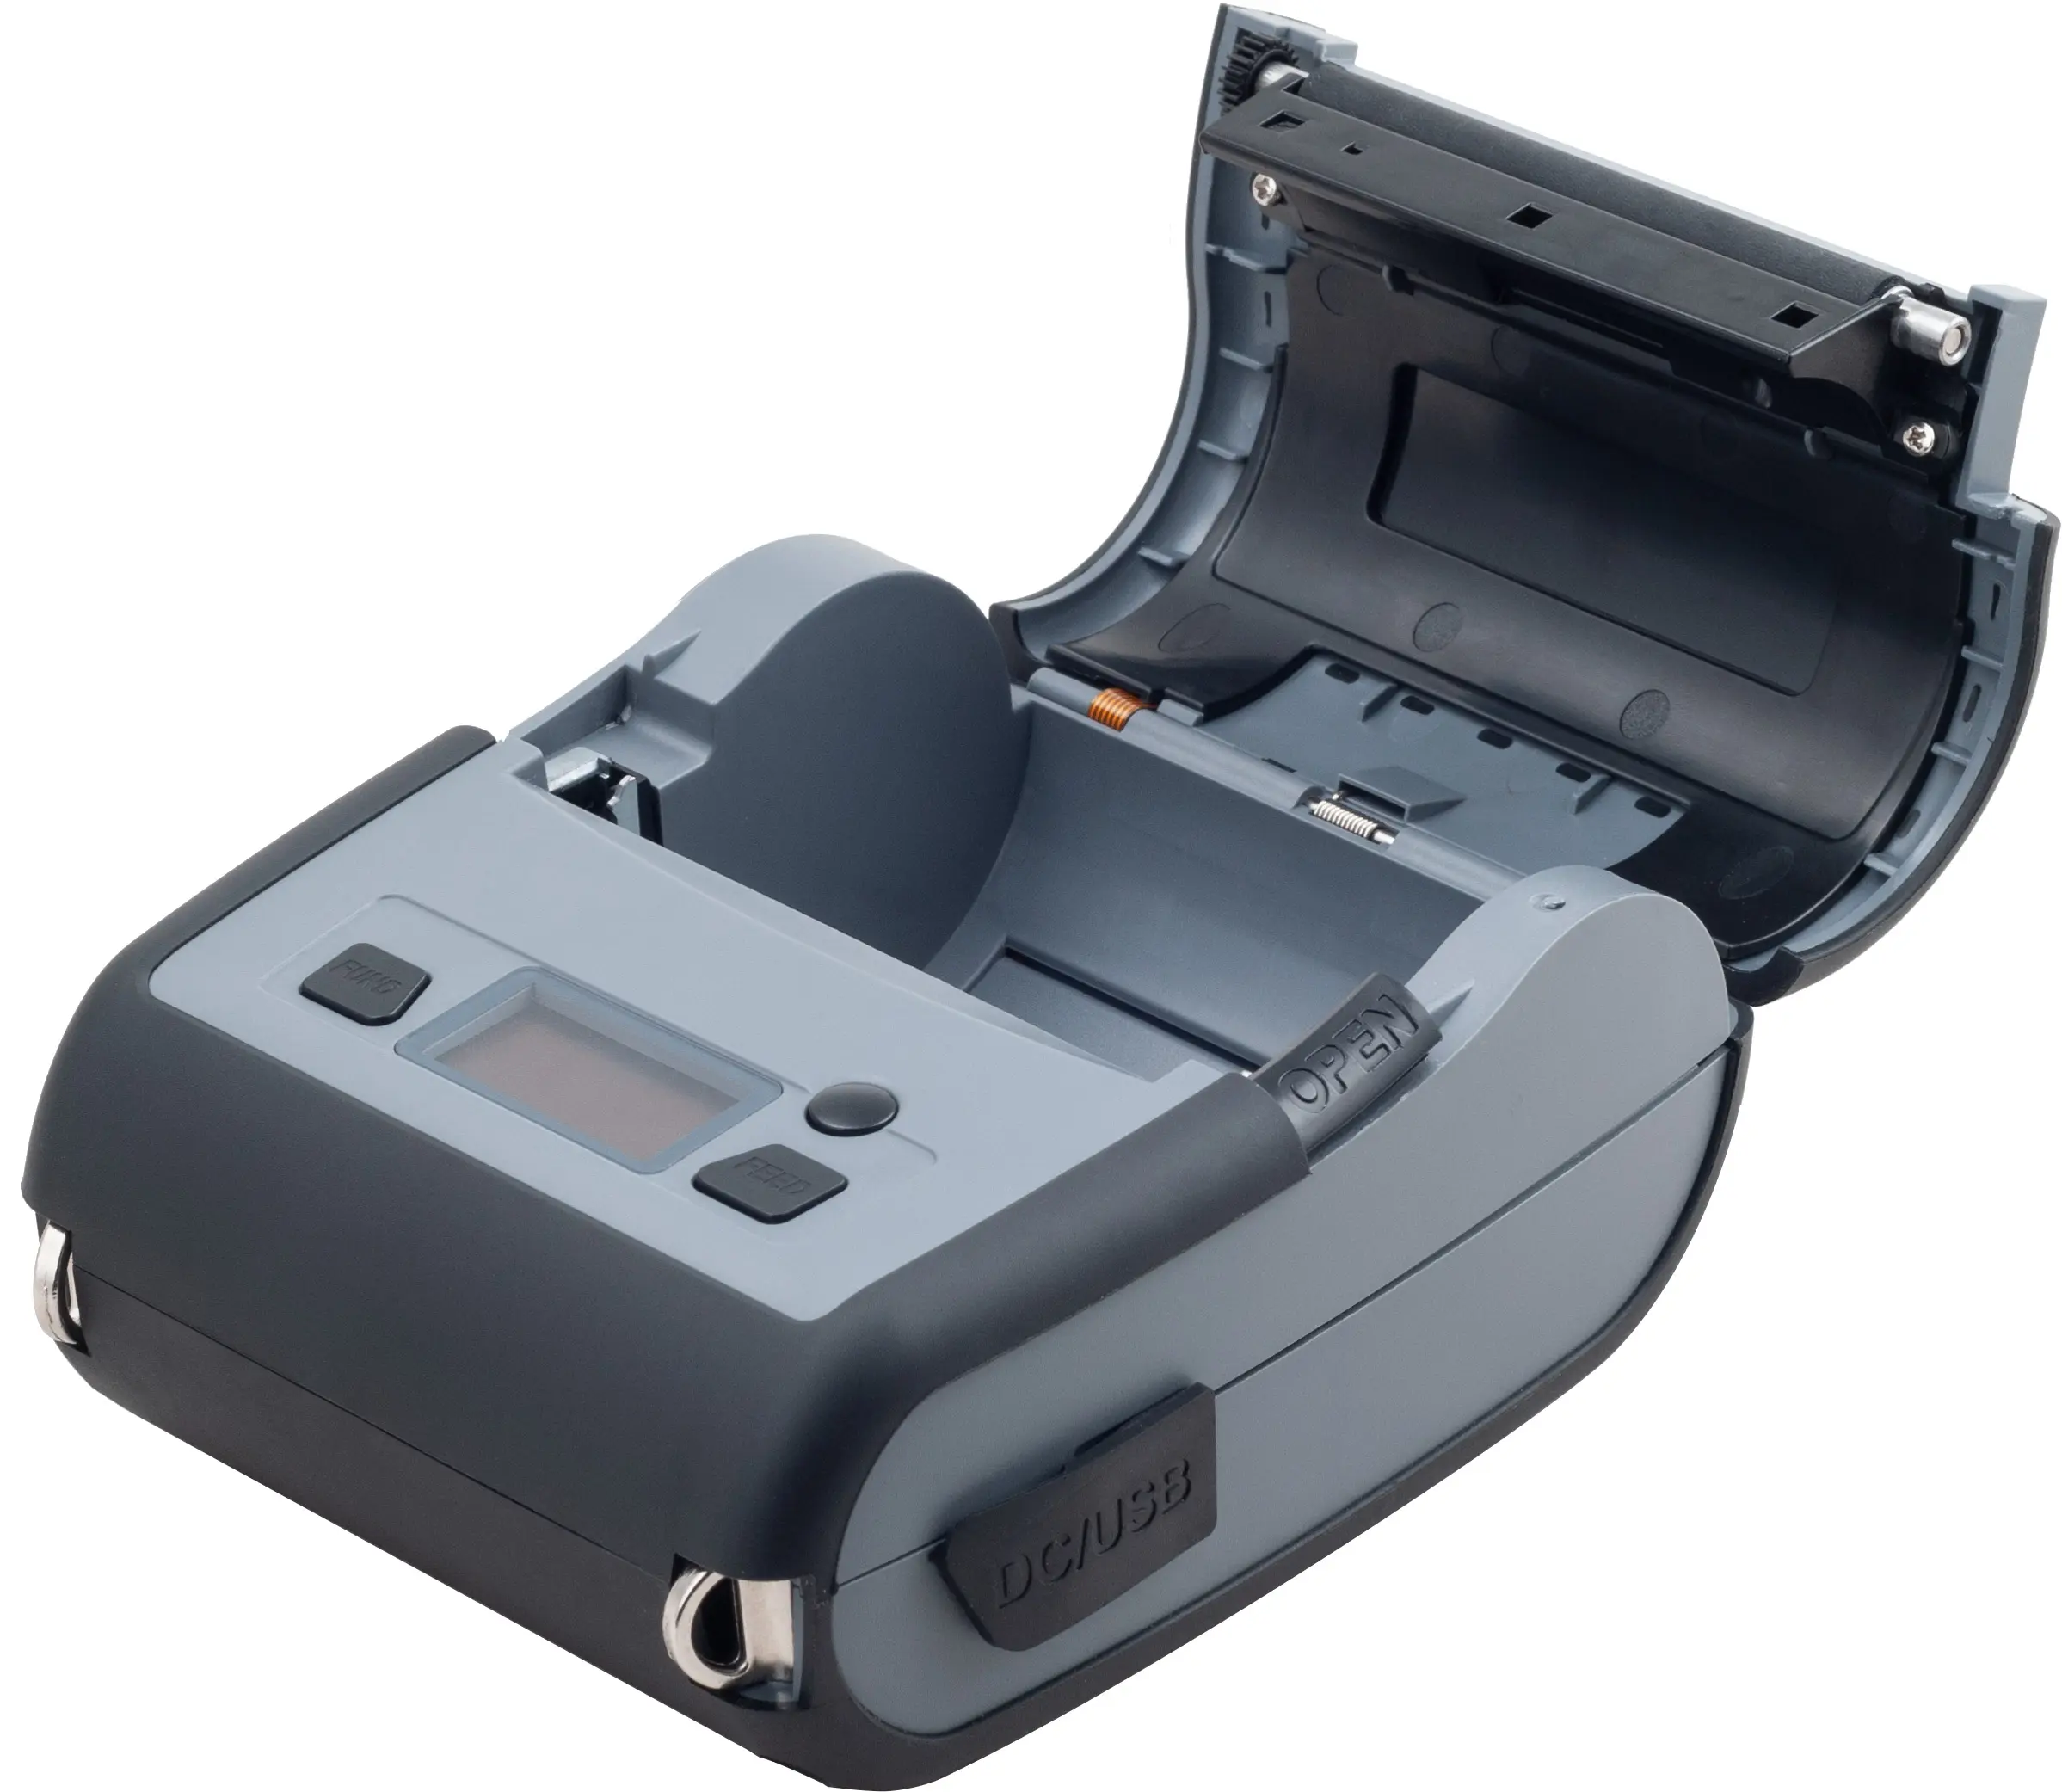 Impressora portátil inteligente, impressora portátil térmica de 80mm 3 polegadas, suporte térmico, impressora móvel dente azul